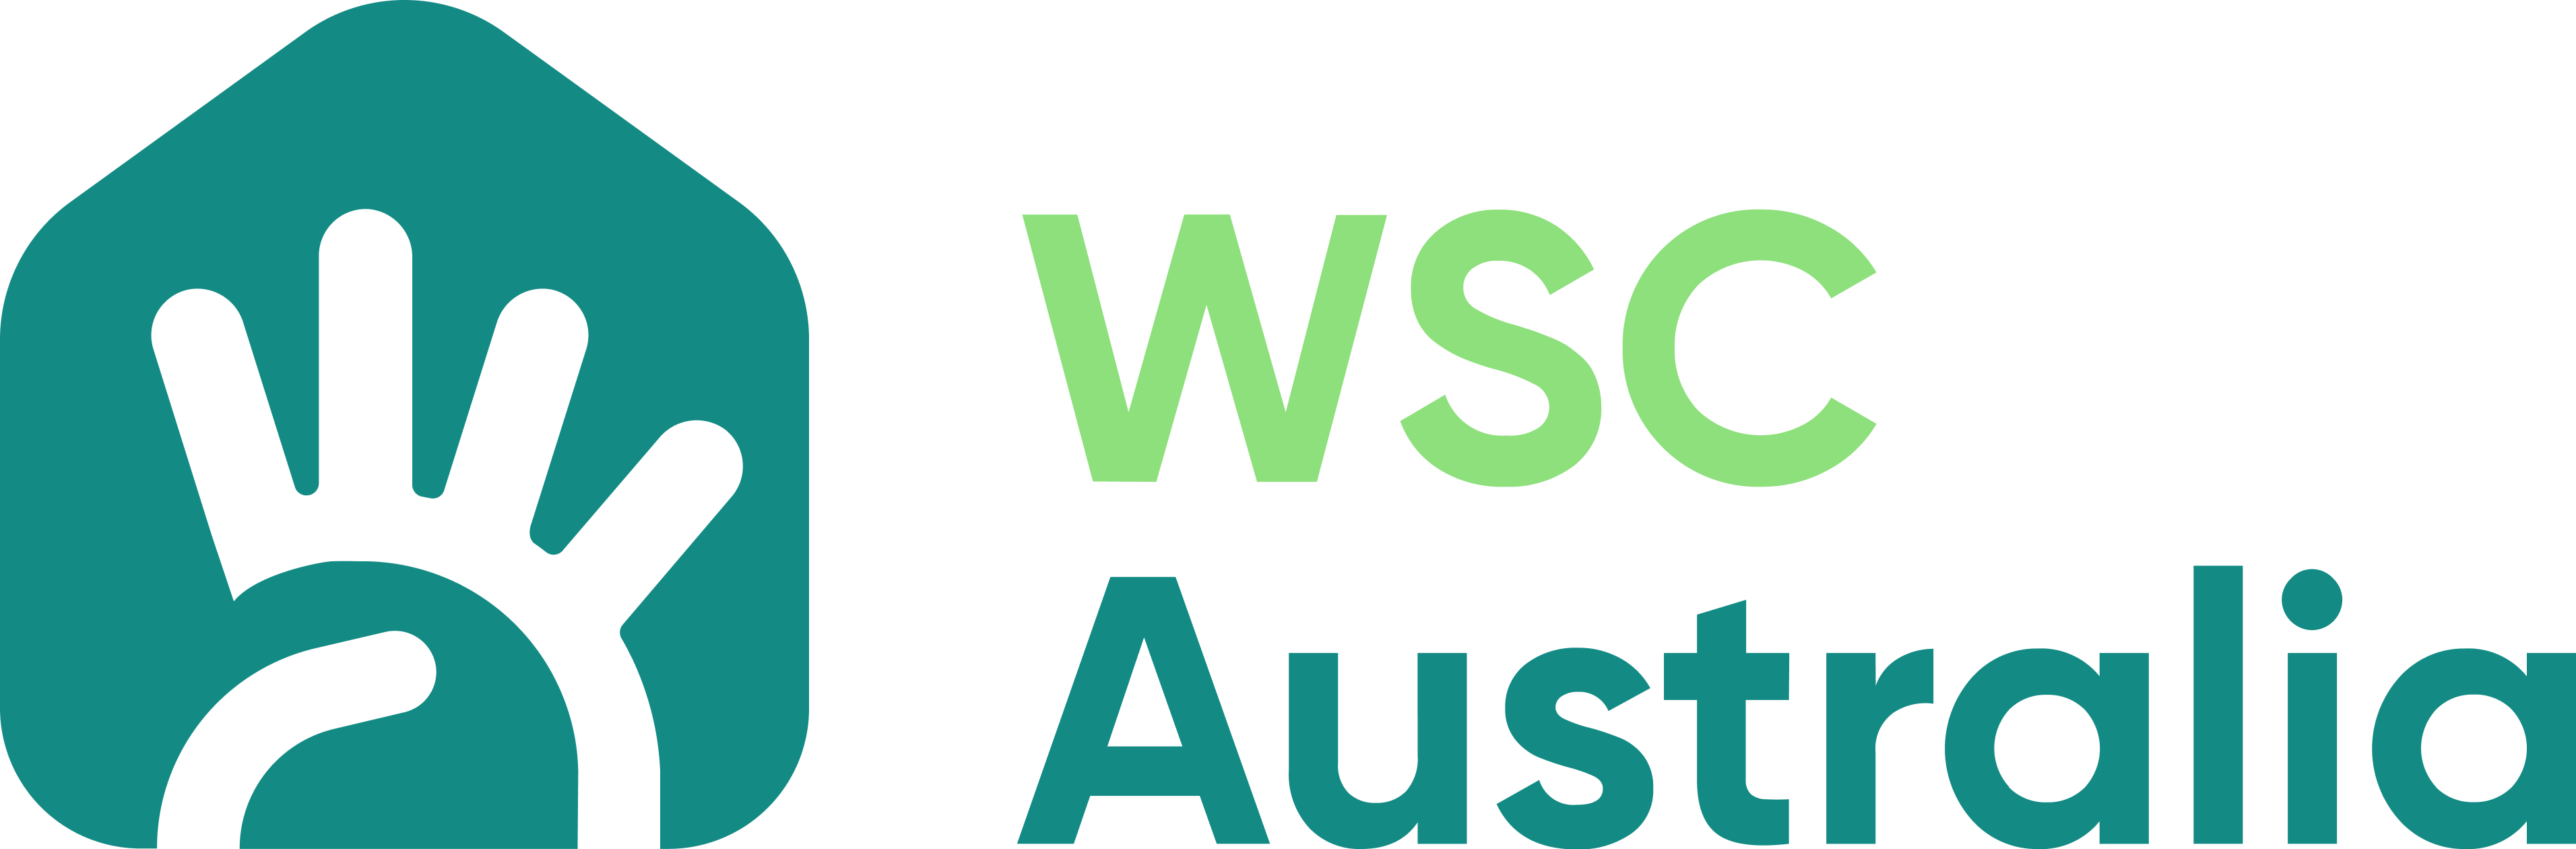 WSC Australia